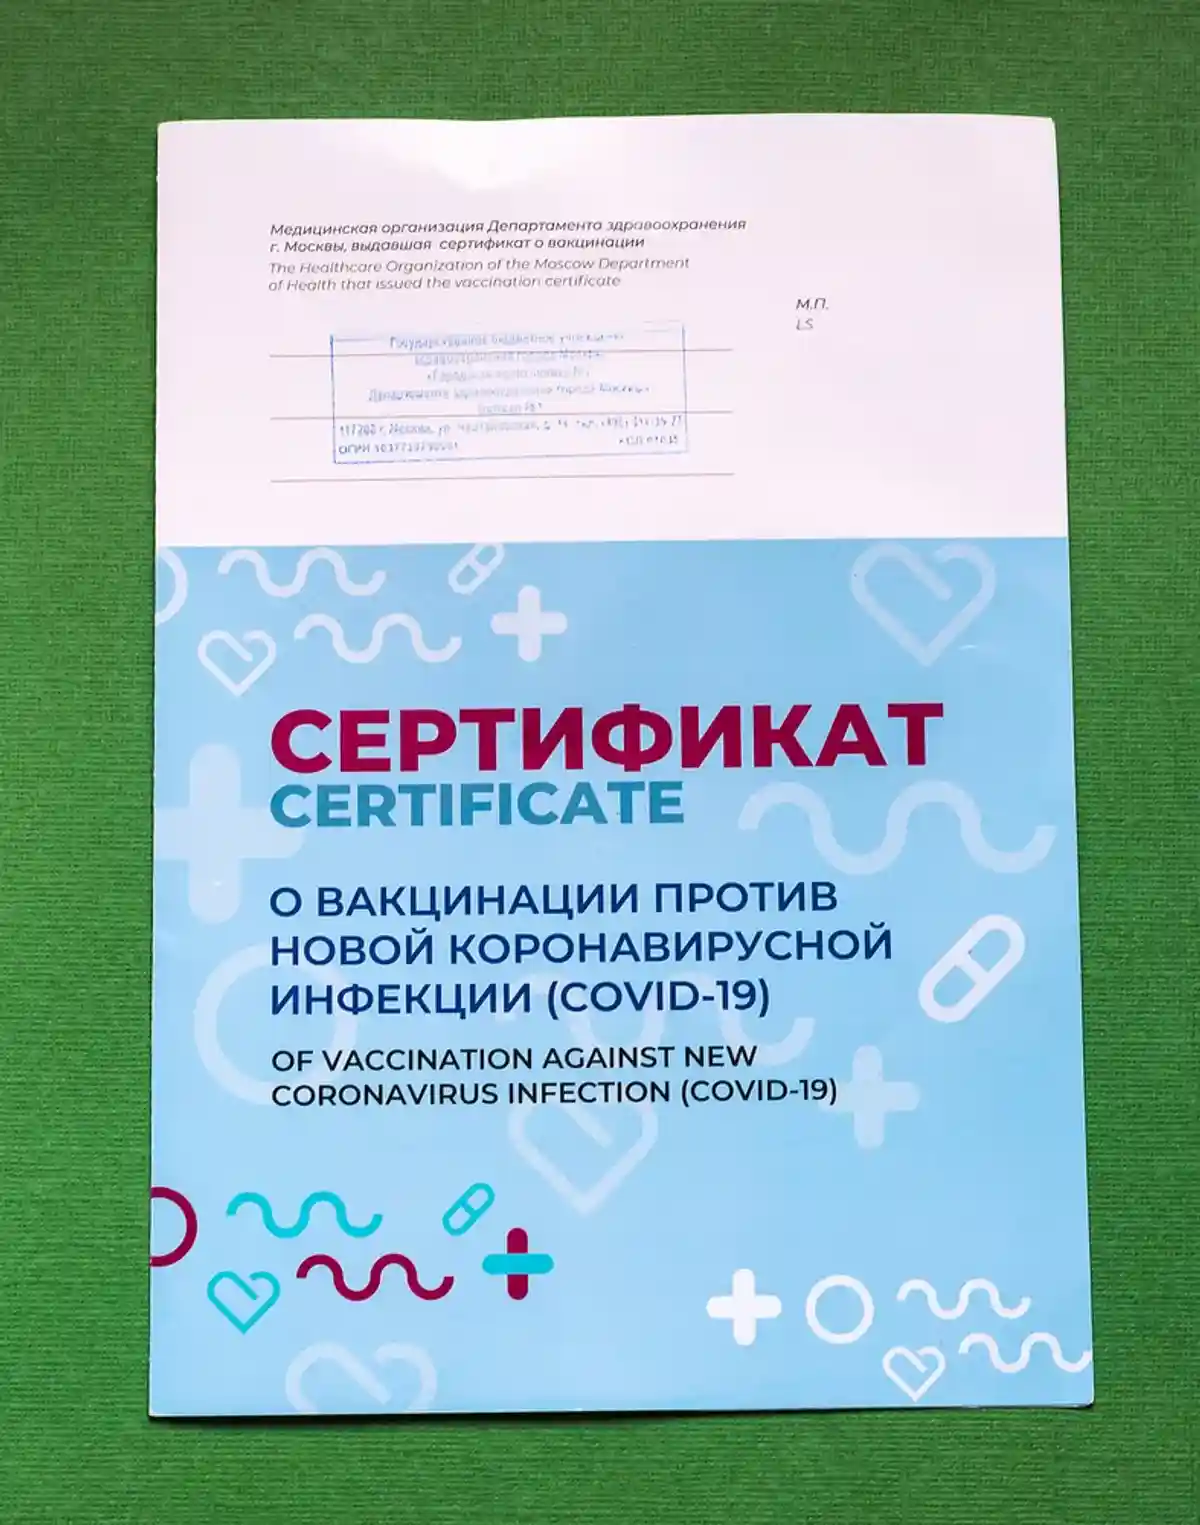 Русскоязычный сертификат о прививках против коронавируса. Фото: fifg / shutterstock.com